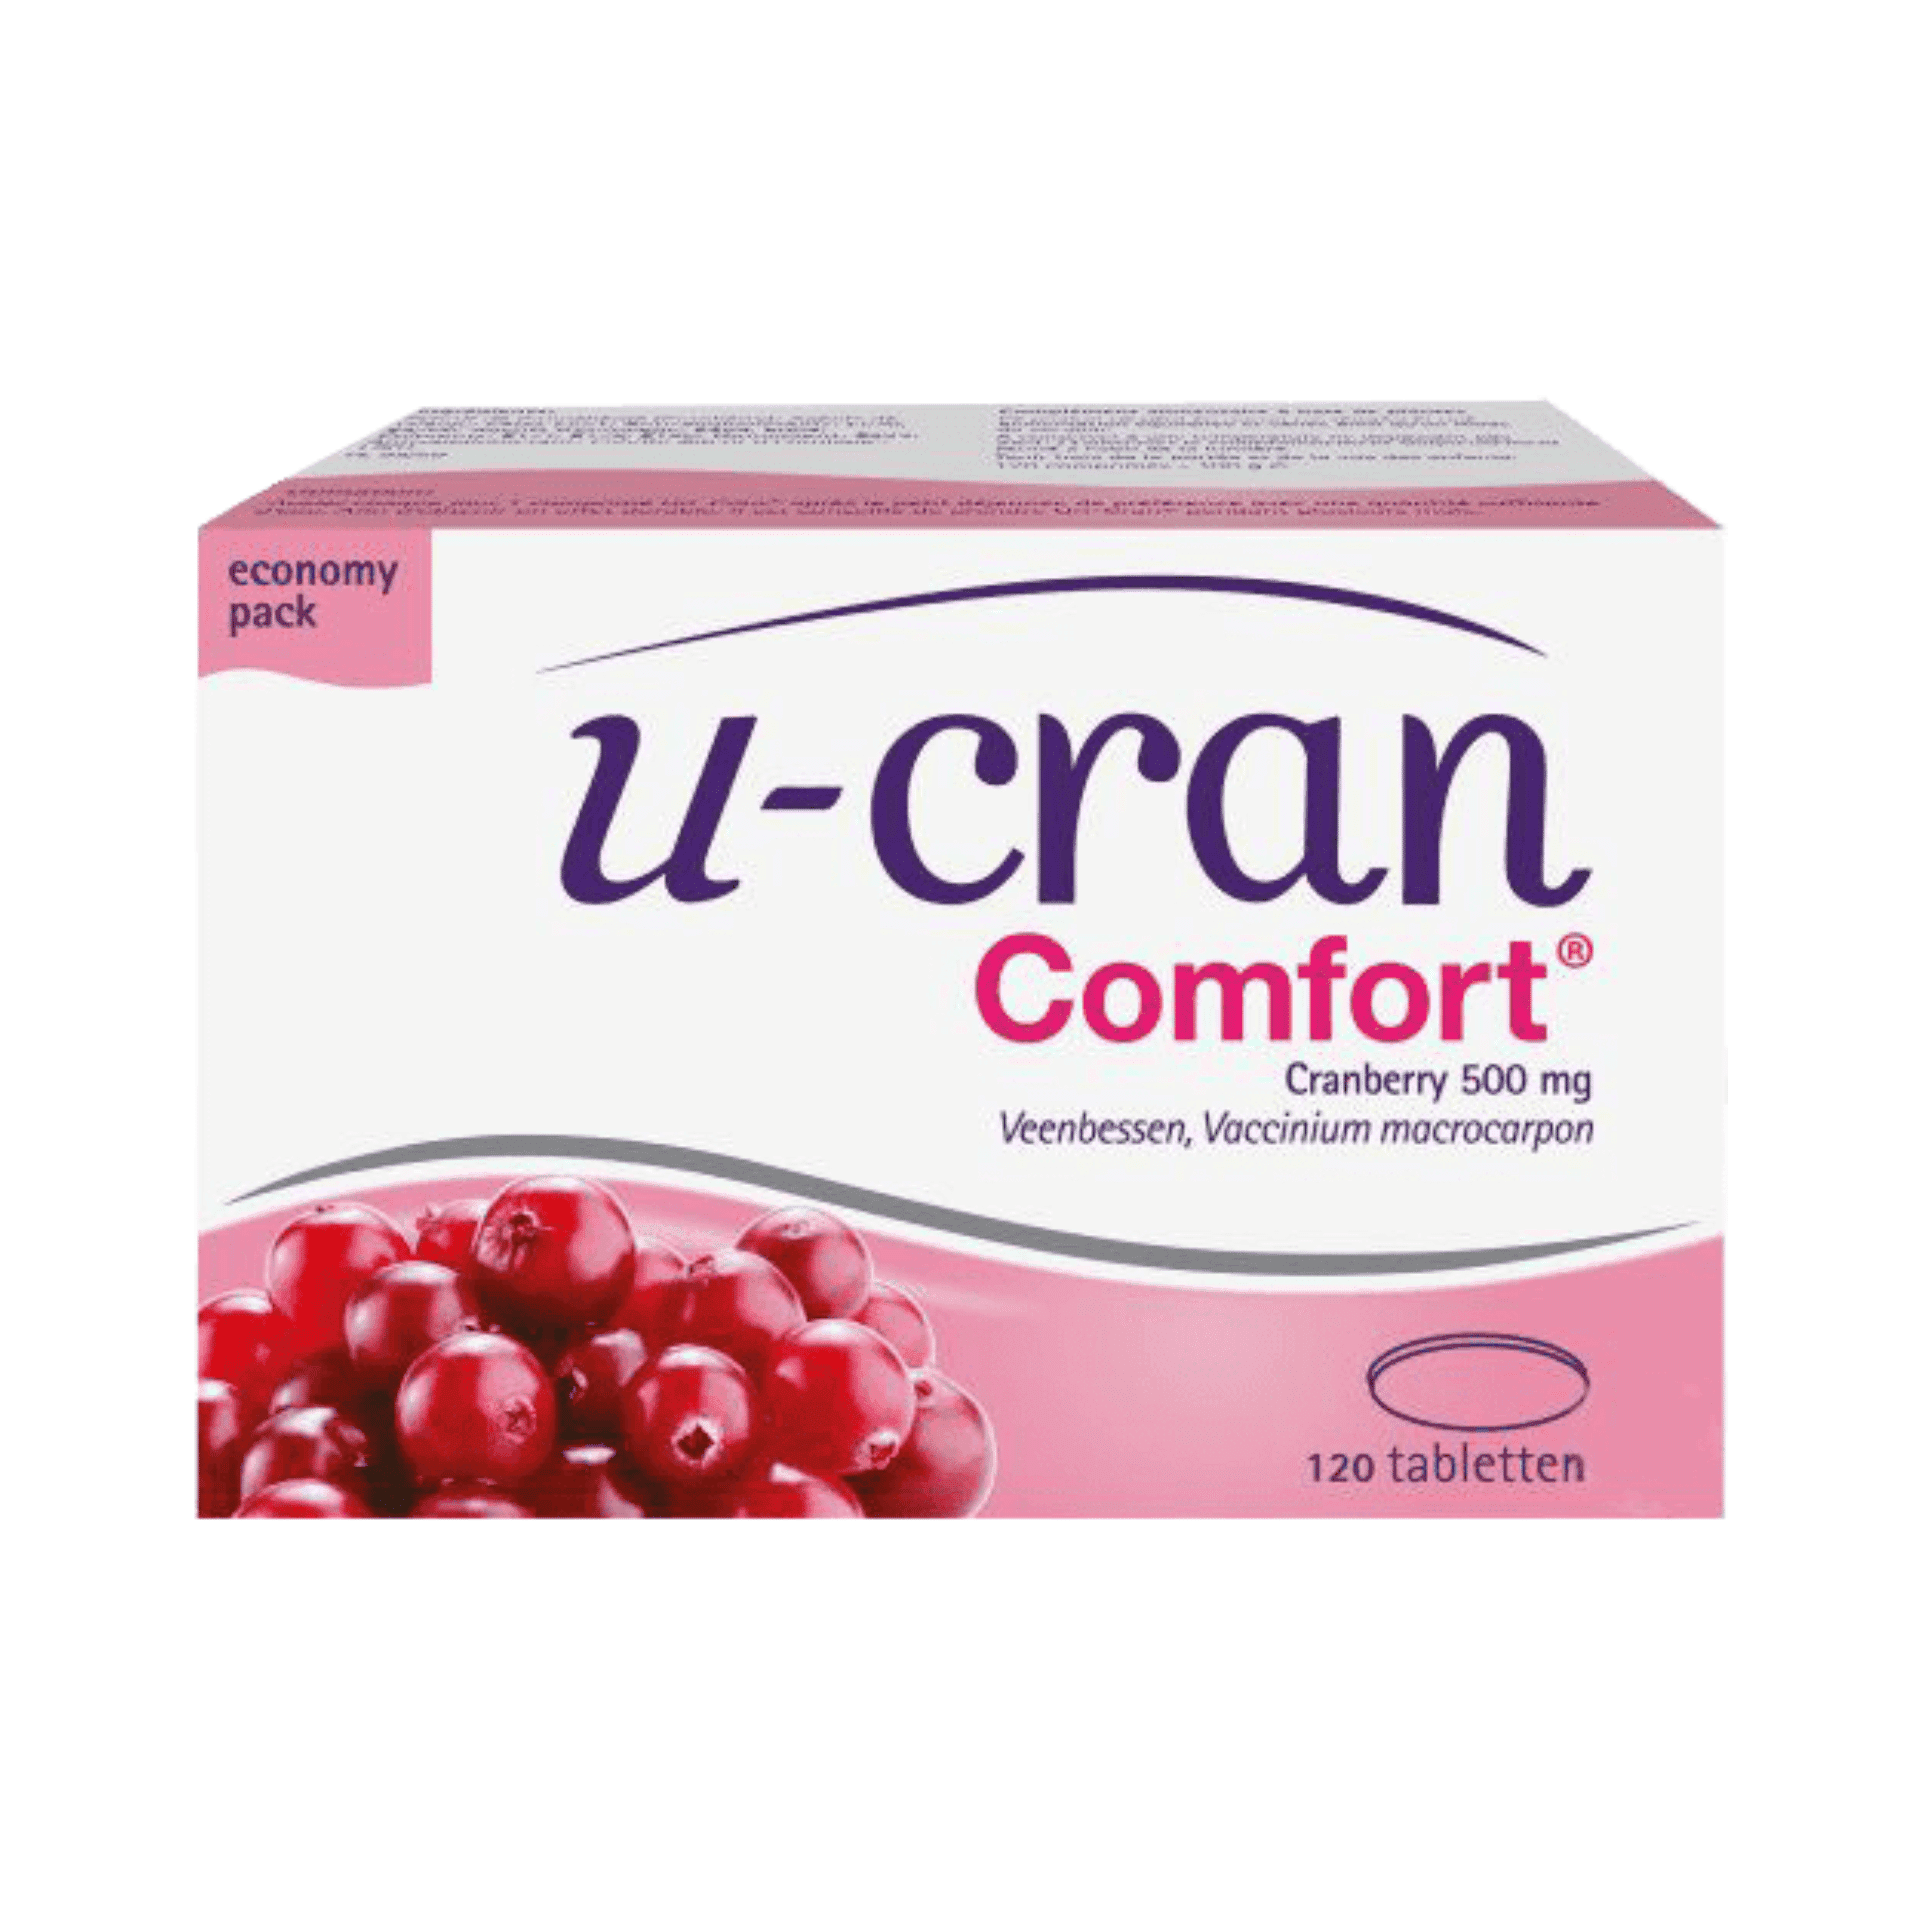 U-Cran Comfort